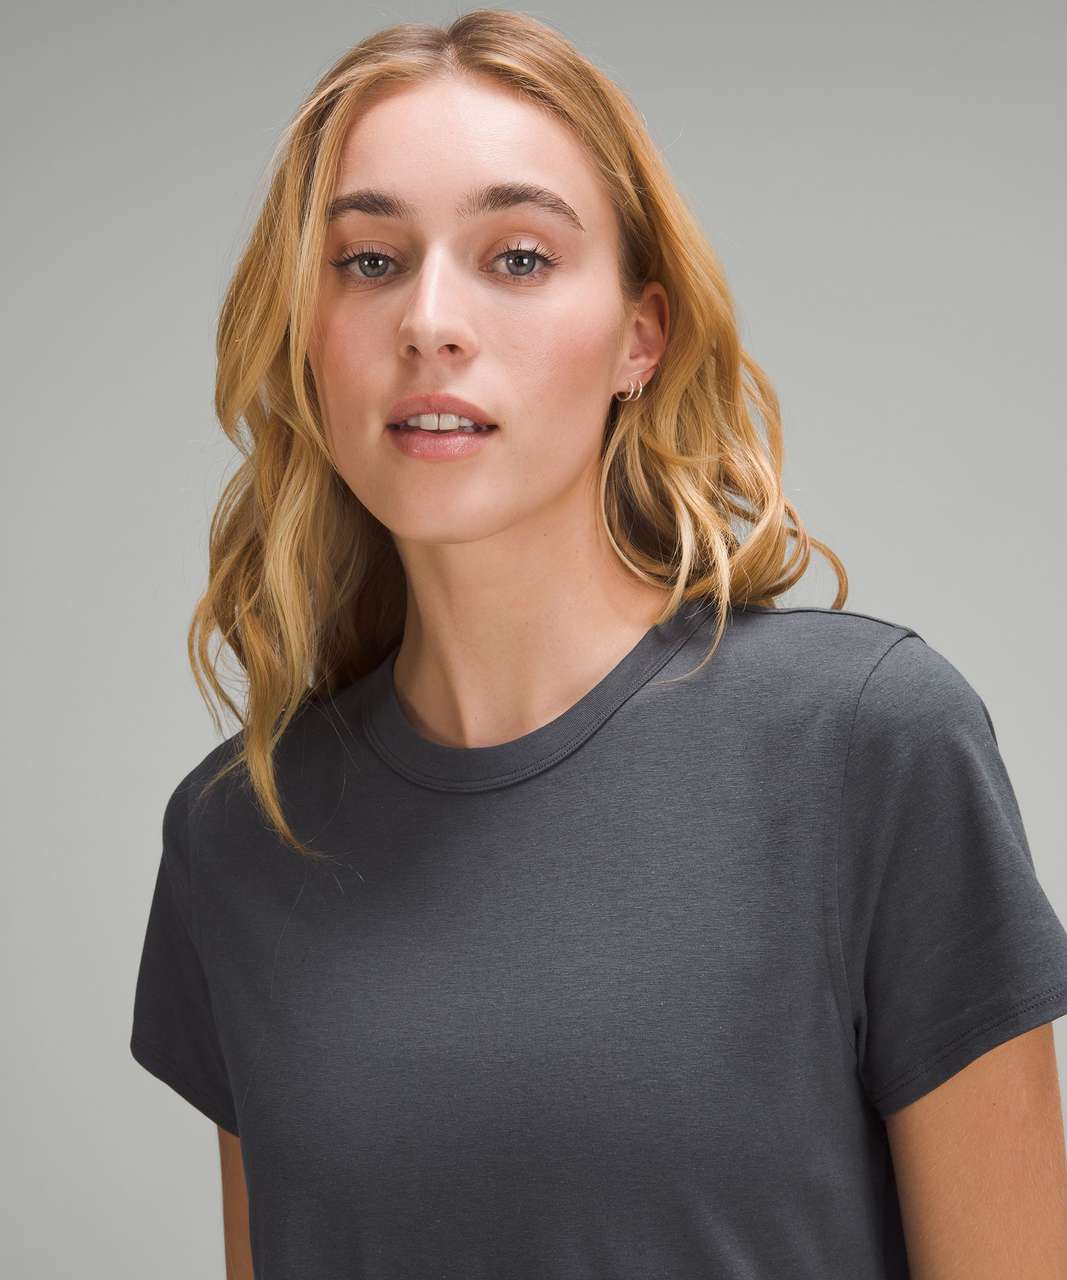 Lululemon Classic-Fit Cotton-Blend T-Shirt Dress - Graphite Grey